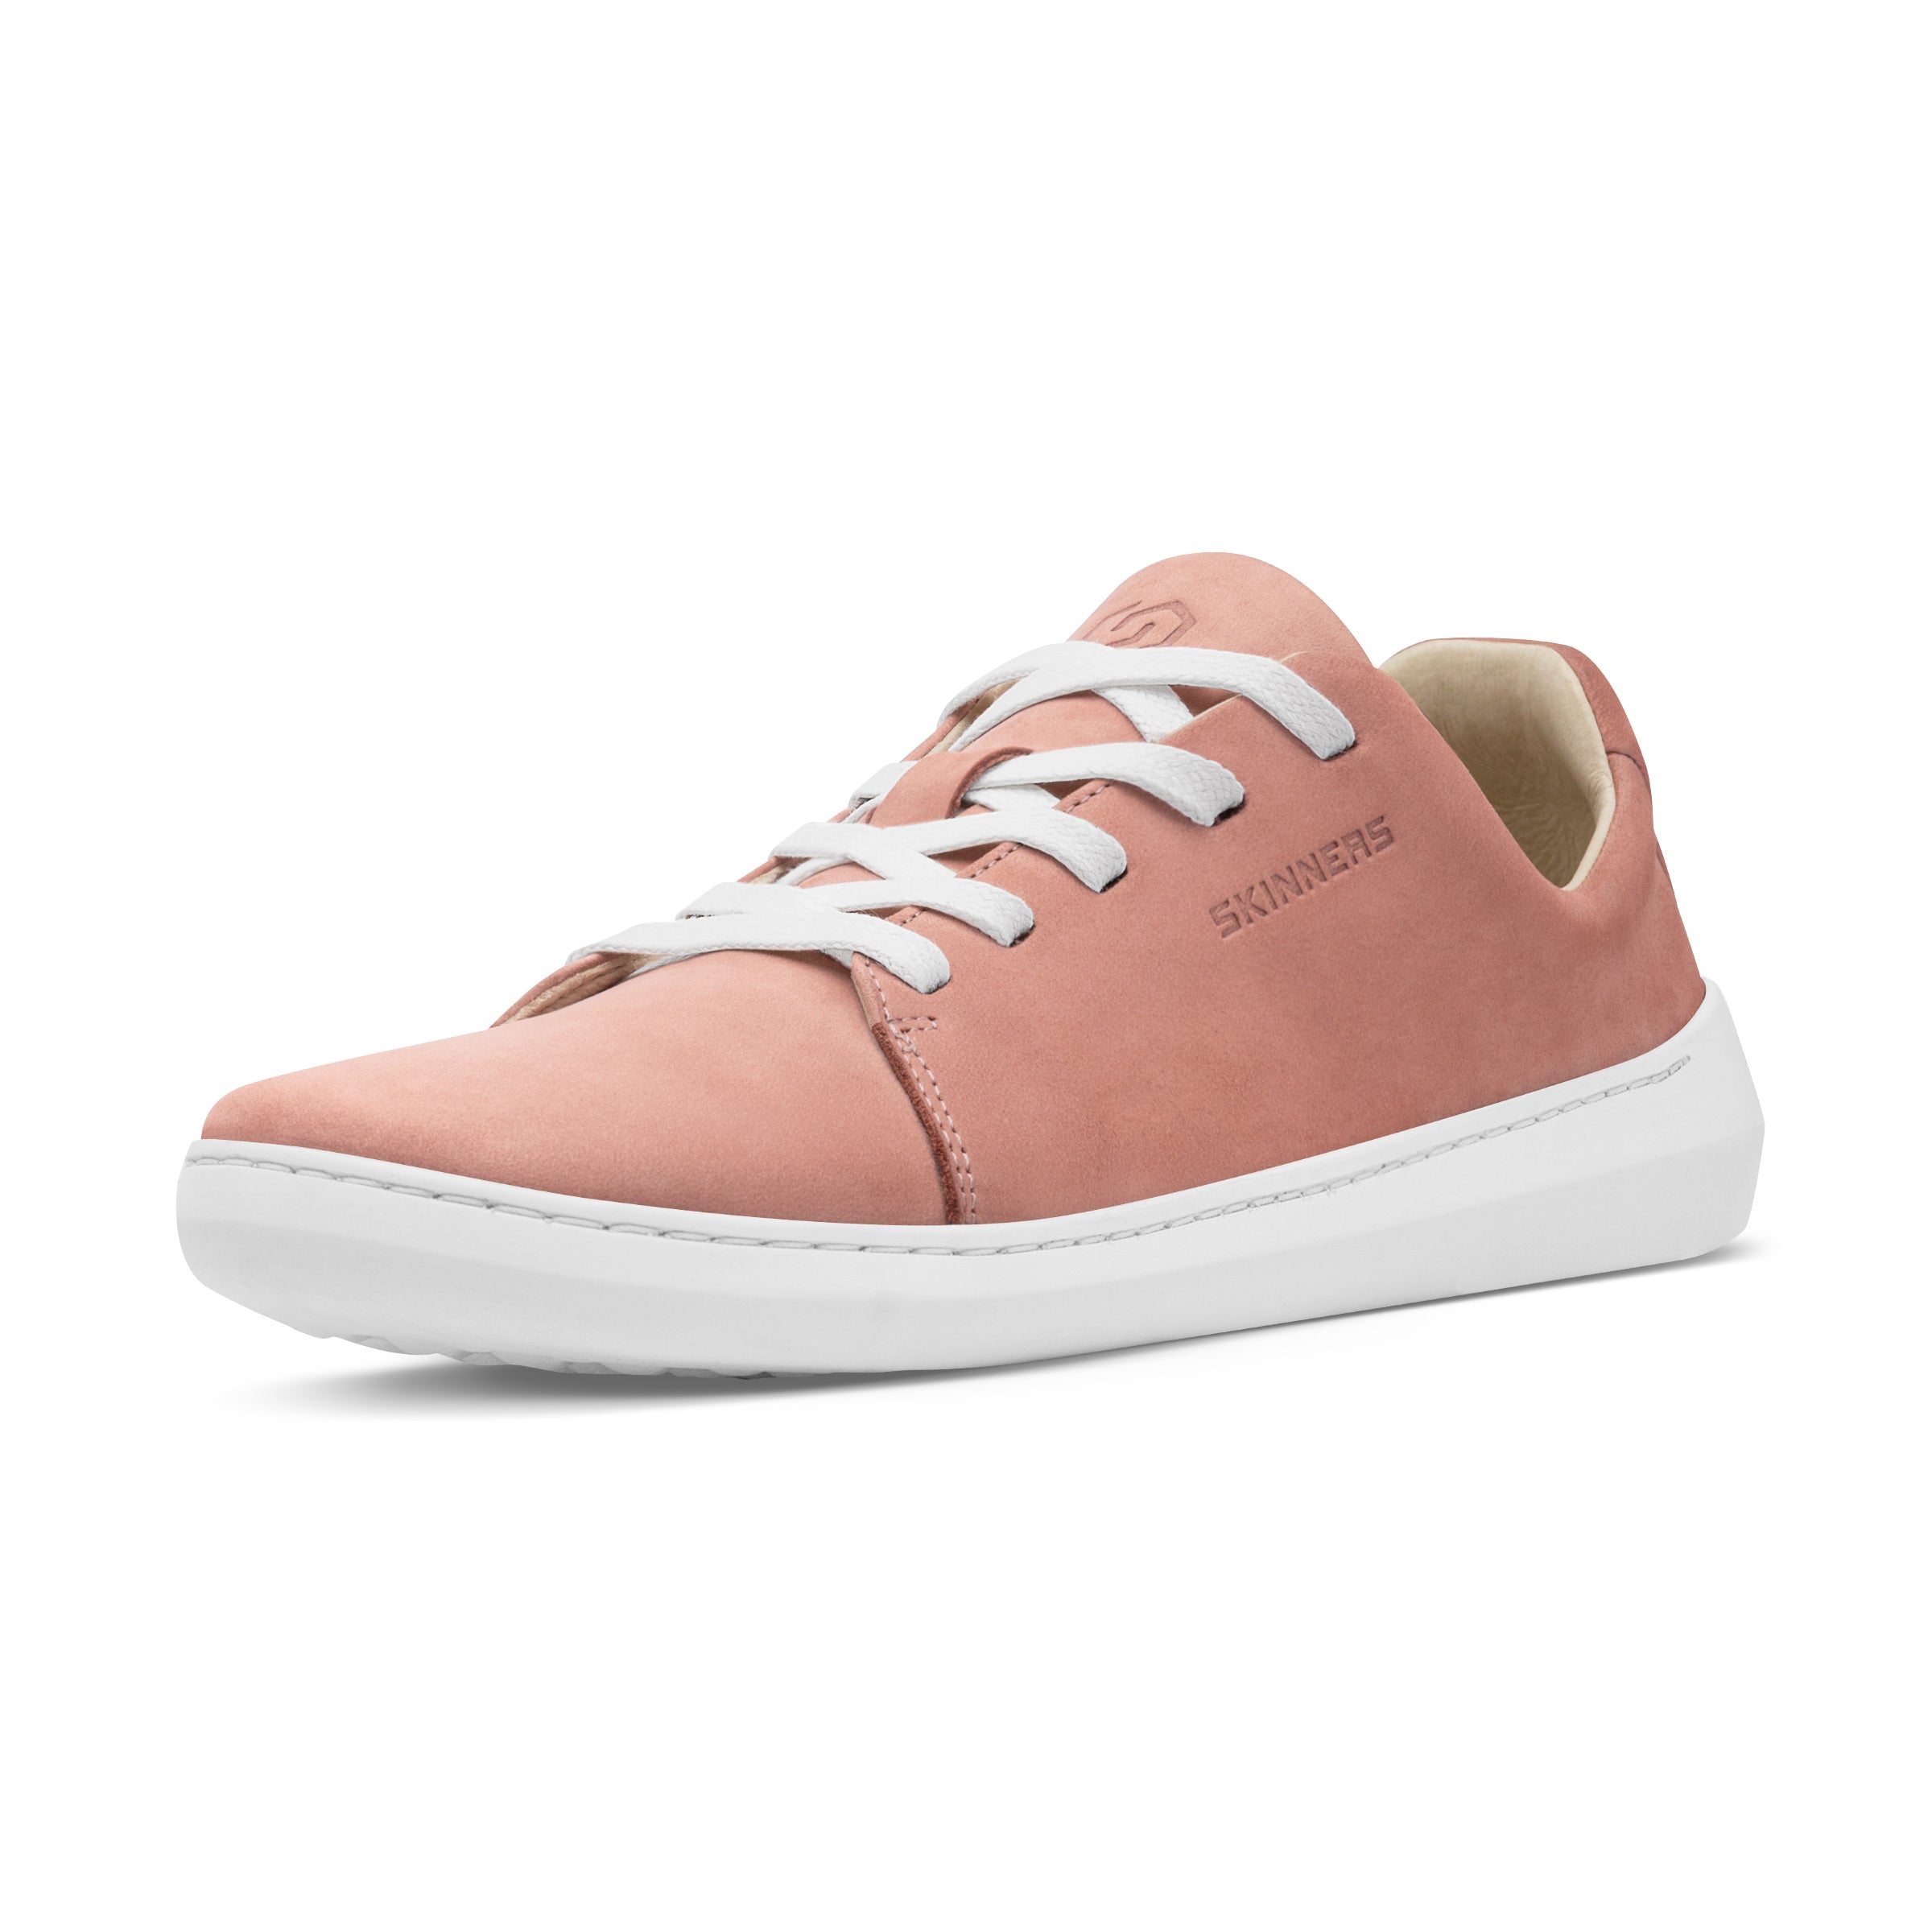 Mærkbare Walker barfods sneakers til kvinder og mænd i farven pink / white, vinklet